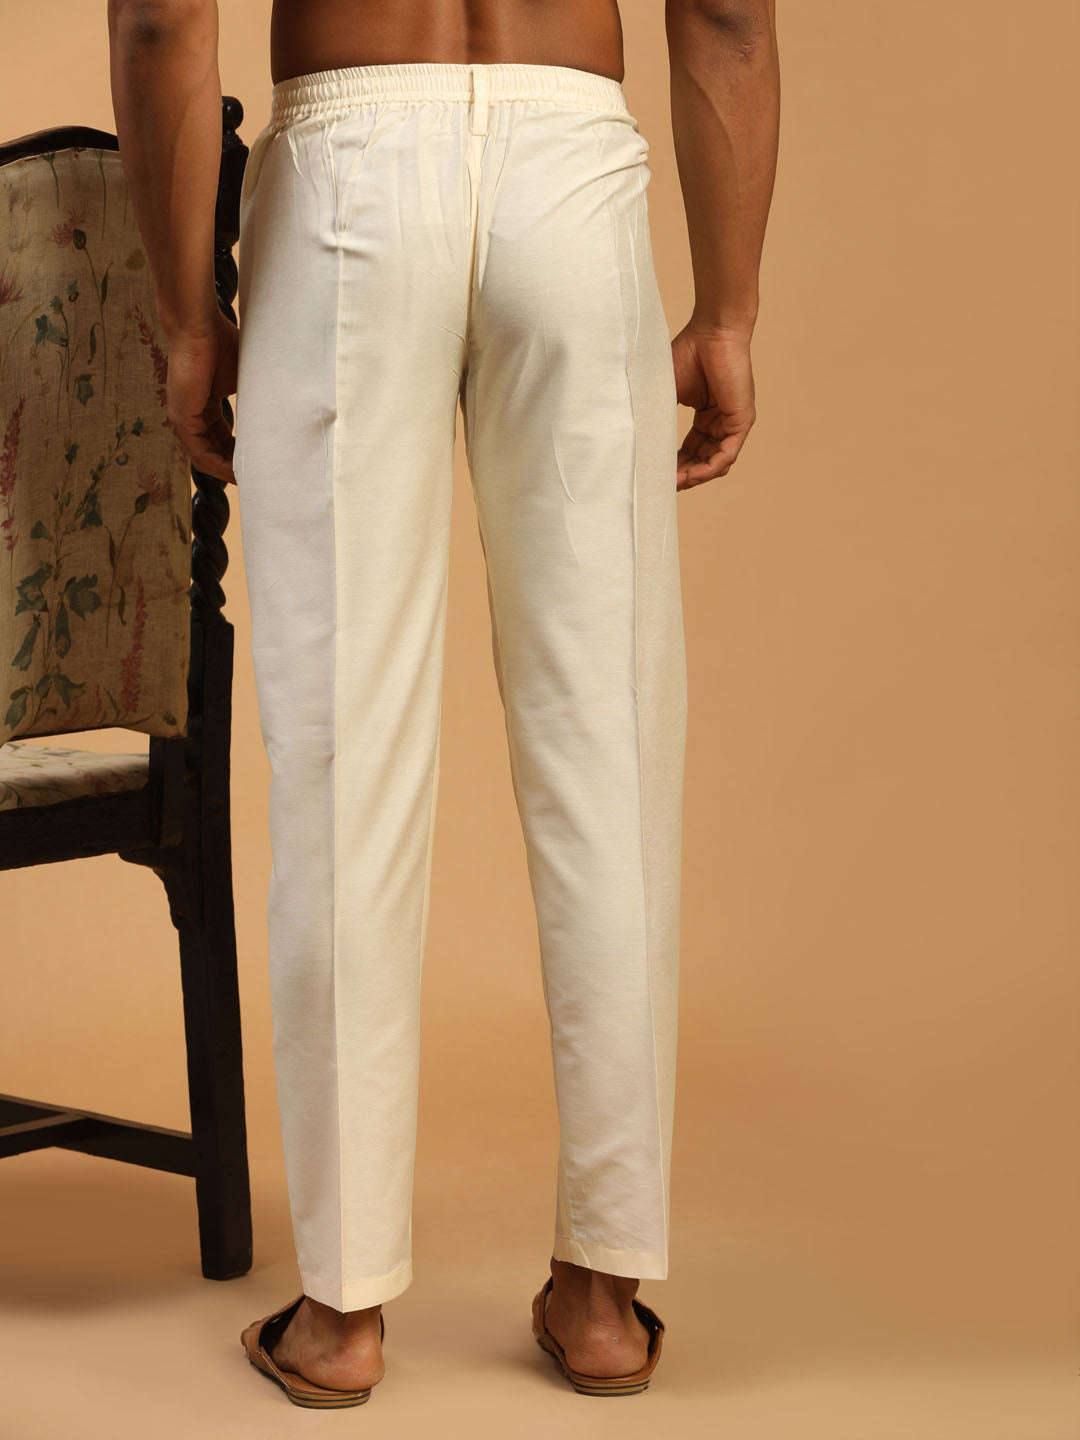 Men''s Cotton Trouser at Rs 450, Men Cotton Pant in Vapi